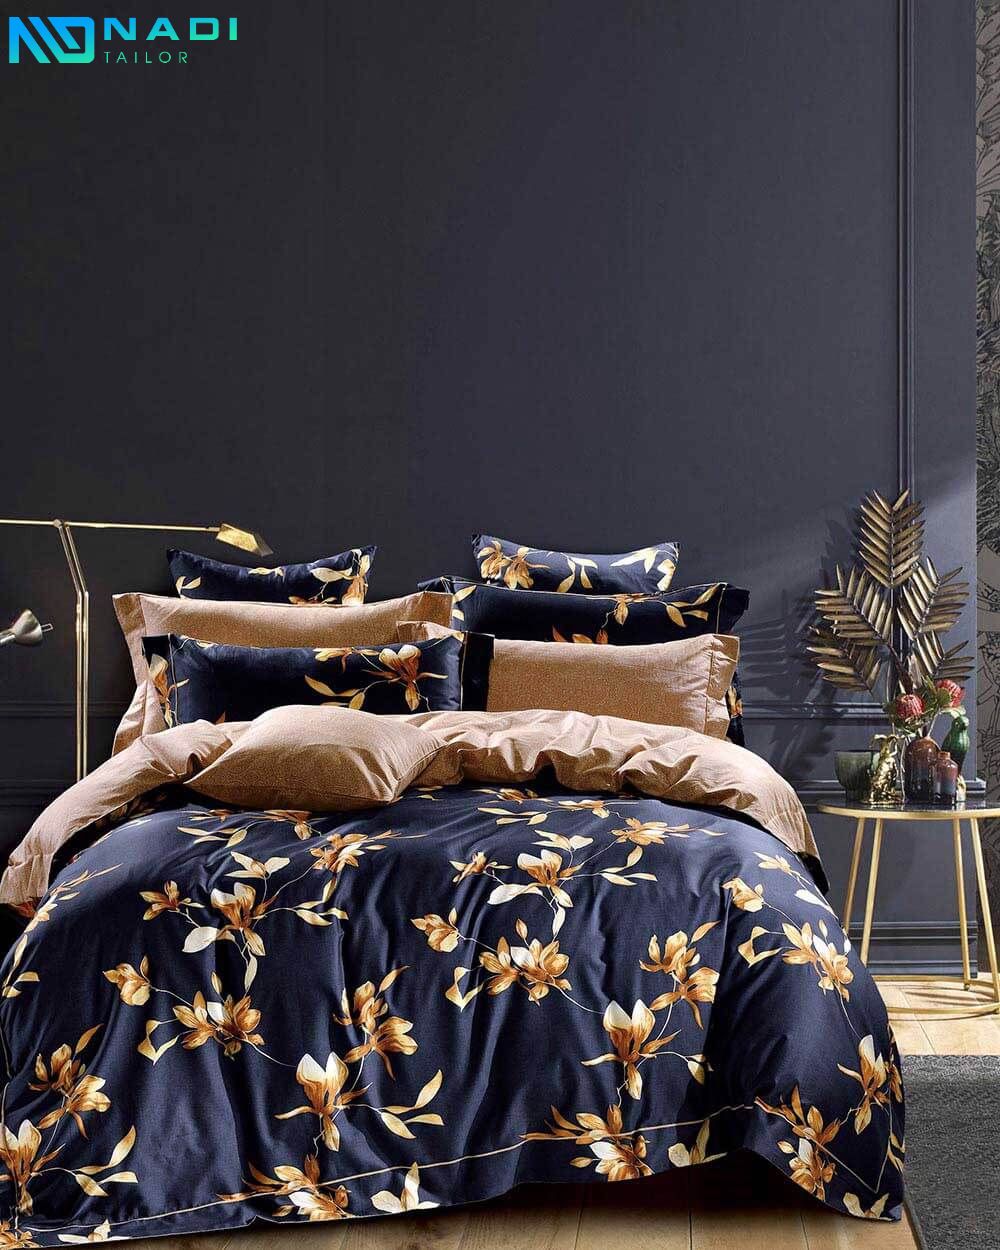 Nhờ sự sang trọng và thanh lịch của vải lụa satin cao cấp sẽ làm tăng sự thẩm mỹ cho phòng ngủ của bạn